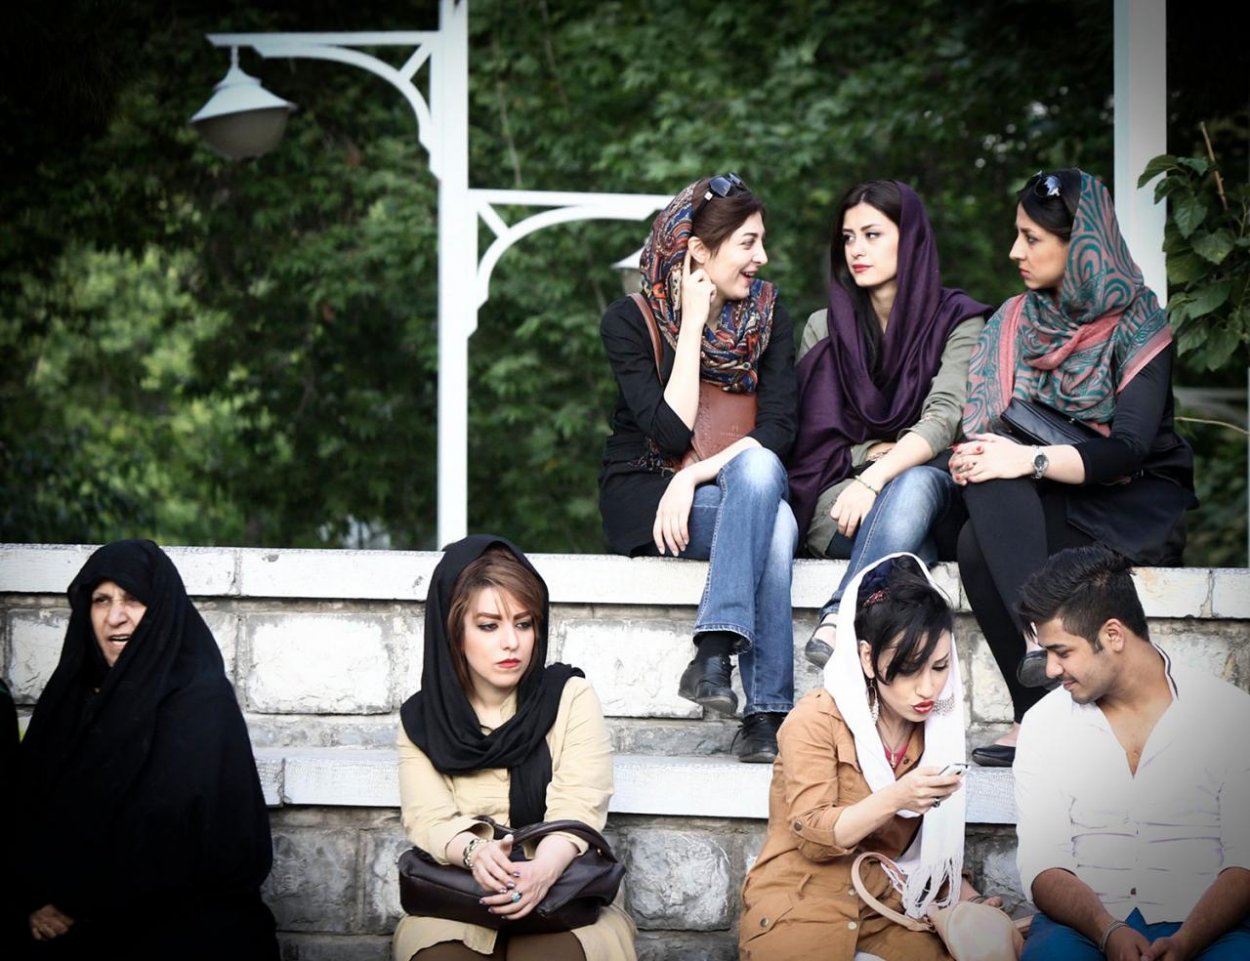 Nechceme byť druhoradým pohlavím, vravia mladé Iránky a skladajú z hláv moslimské šatky